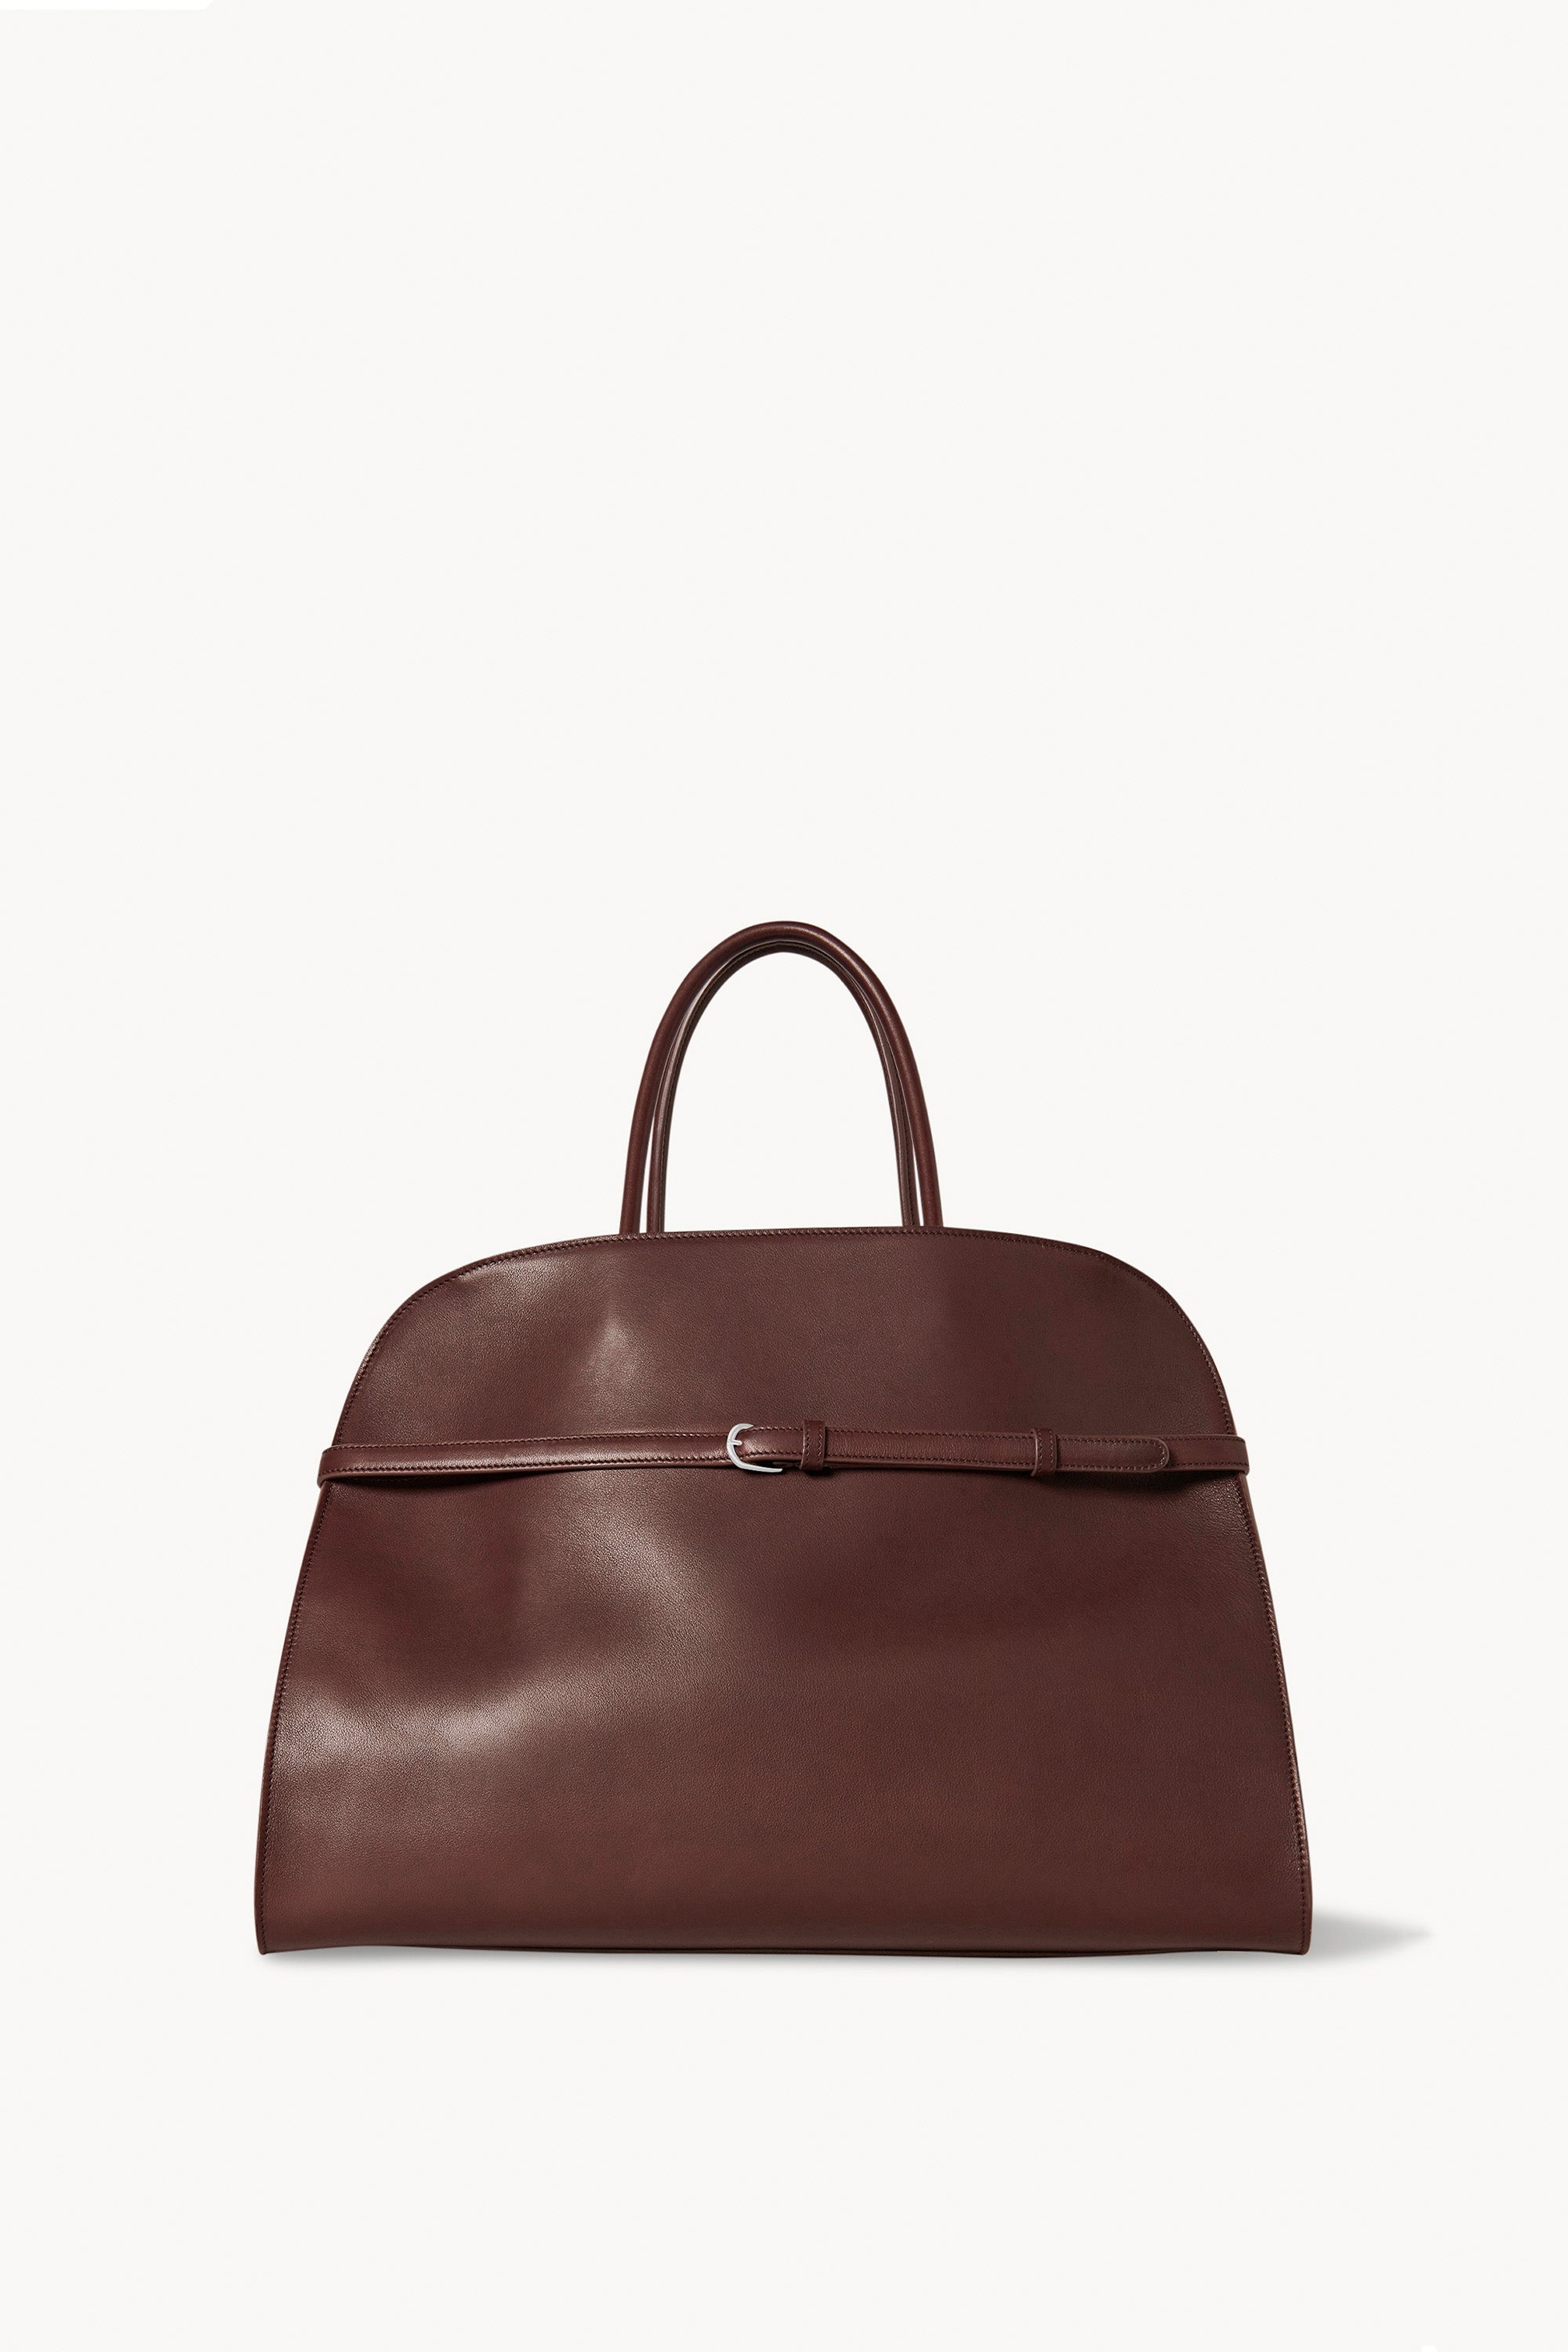 Margaux Belt 15 Bag in Leather - 1